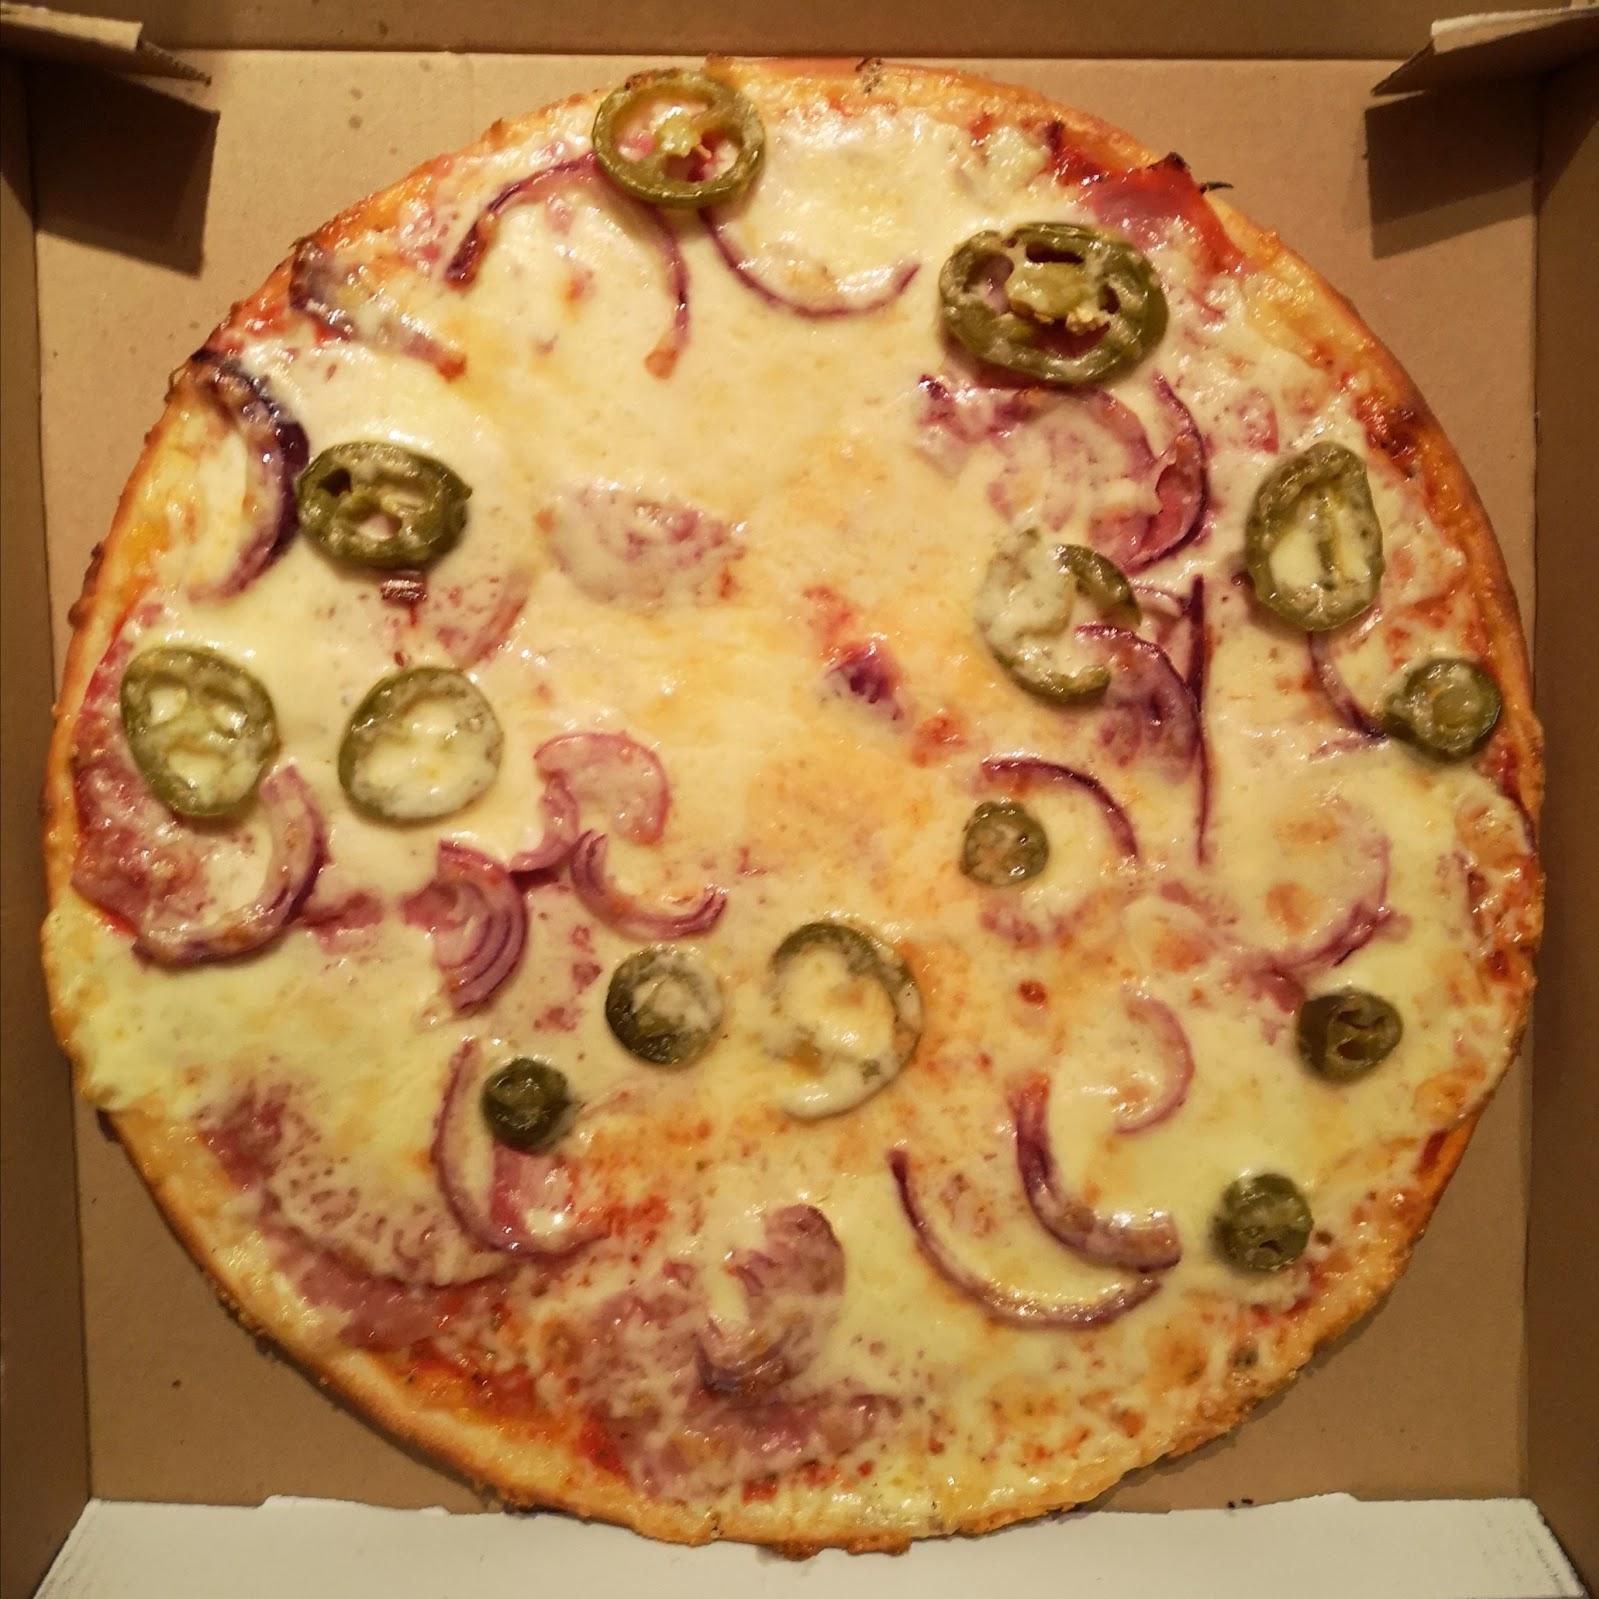 Restaurant "Bux-Pizzaservice UG (haftungsbeschränkt)" in Buxtehude